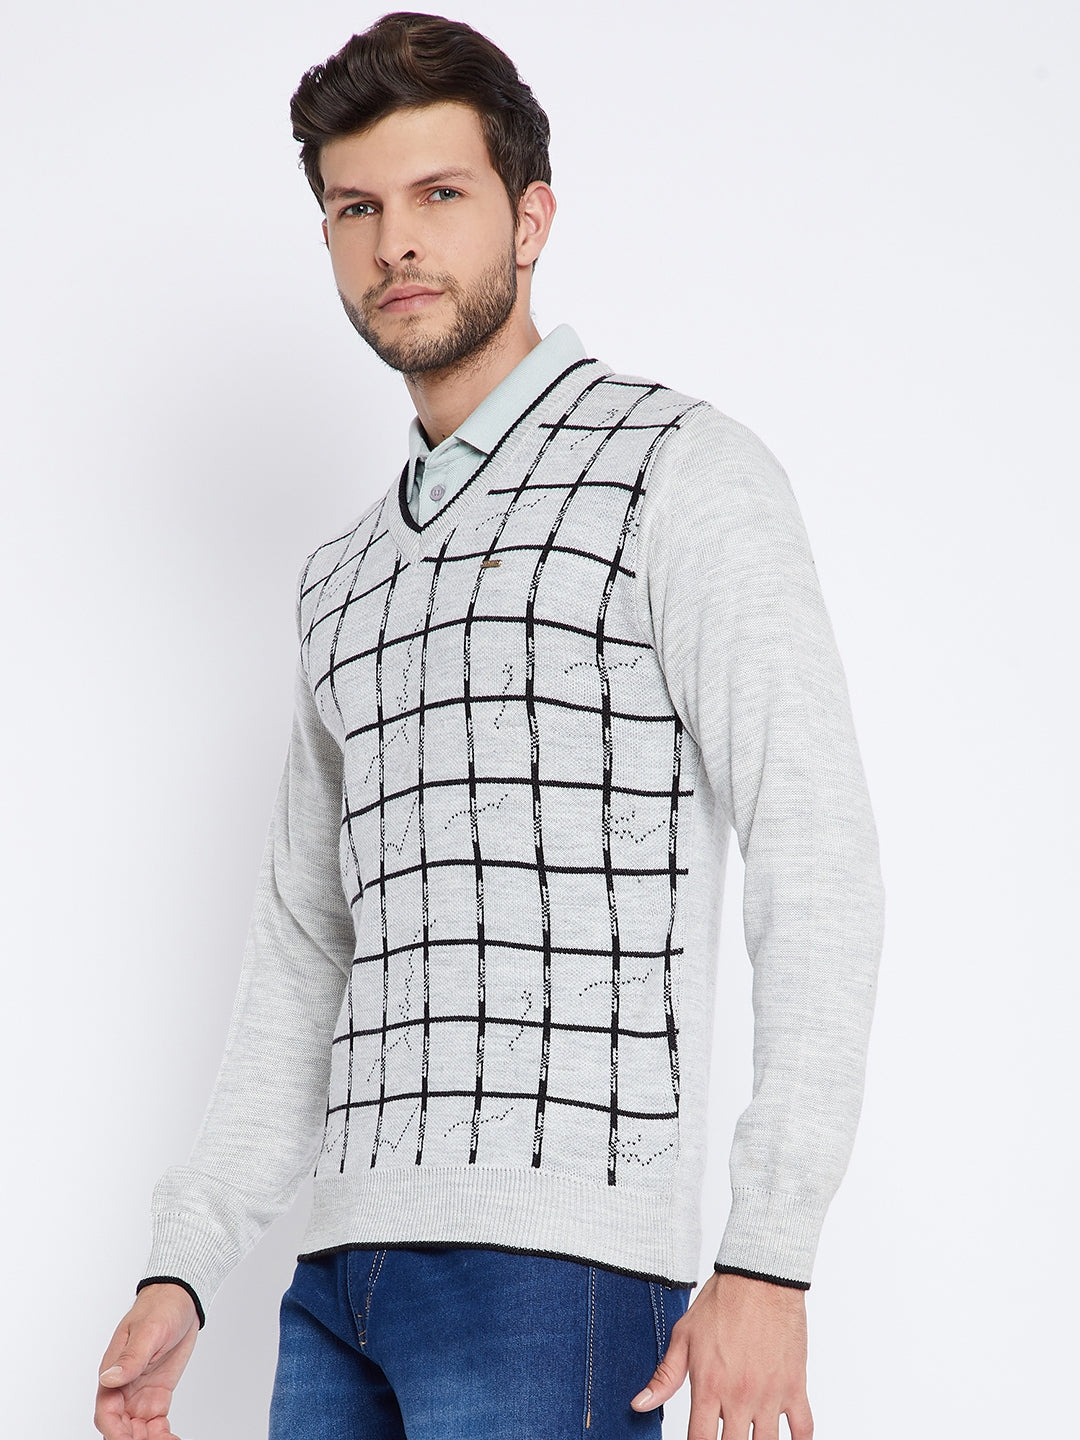 Livfree Men's Full Sleeves V-Neck Check Sweater - Light Grey